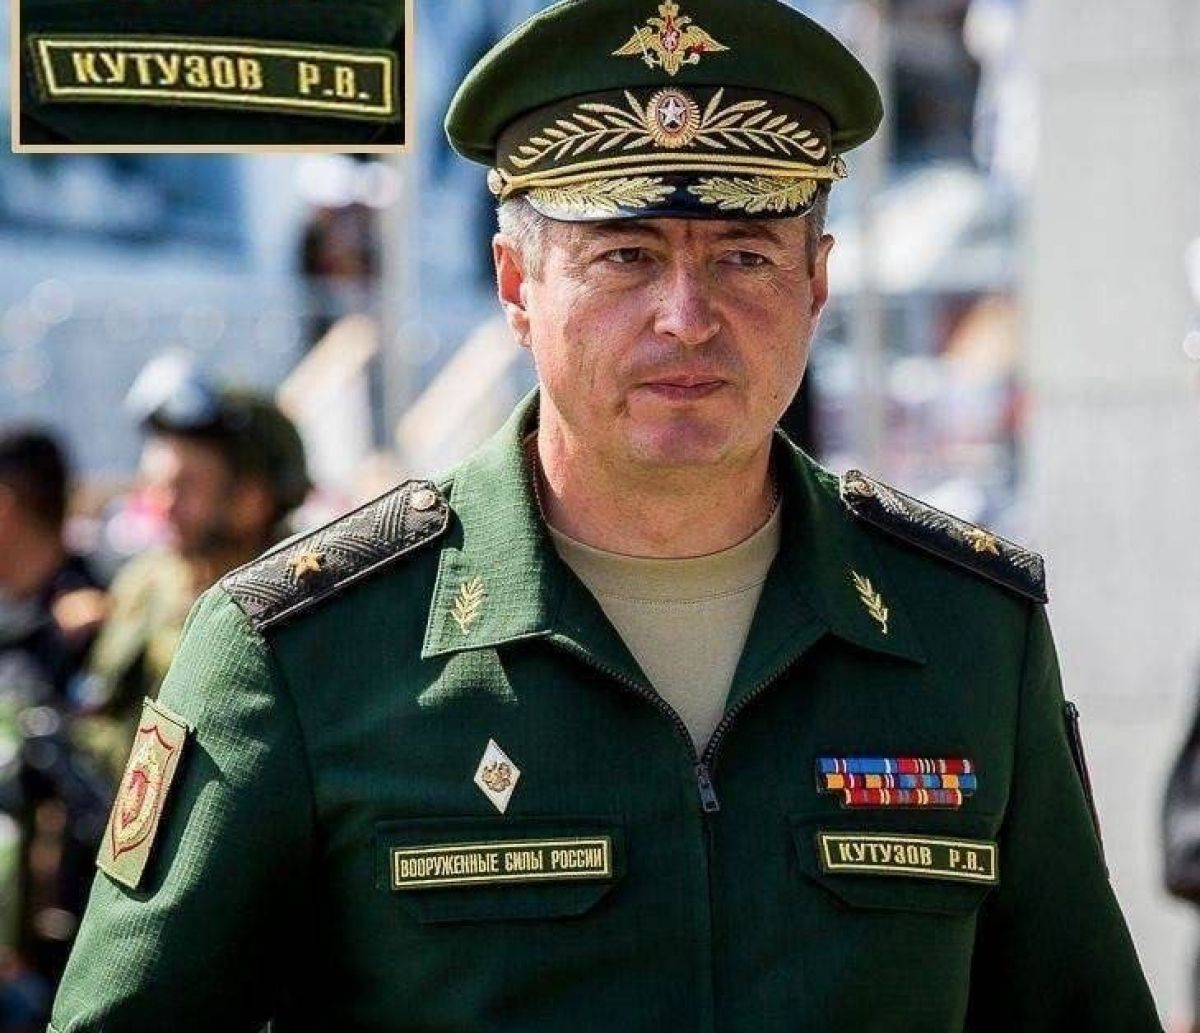 Ликвидирован российский генерал Кутузов, - источники - фото